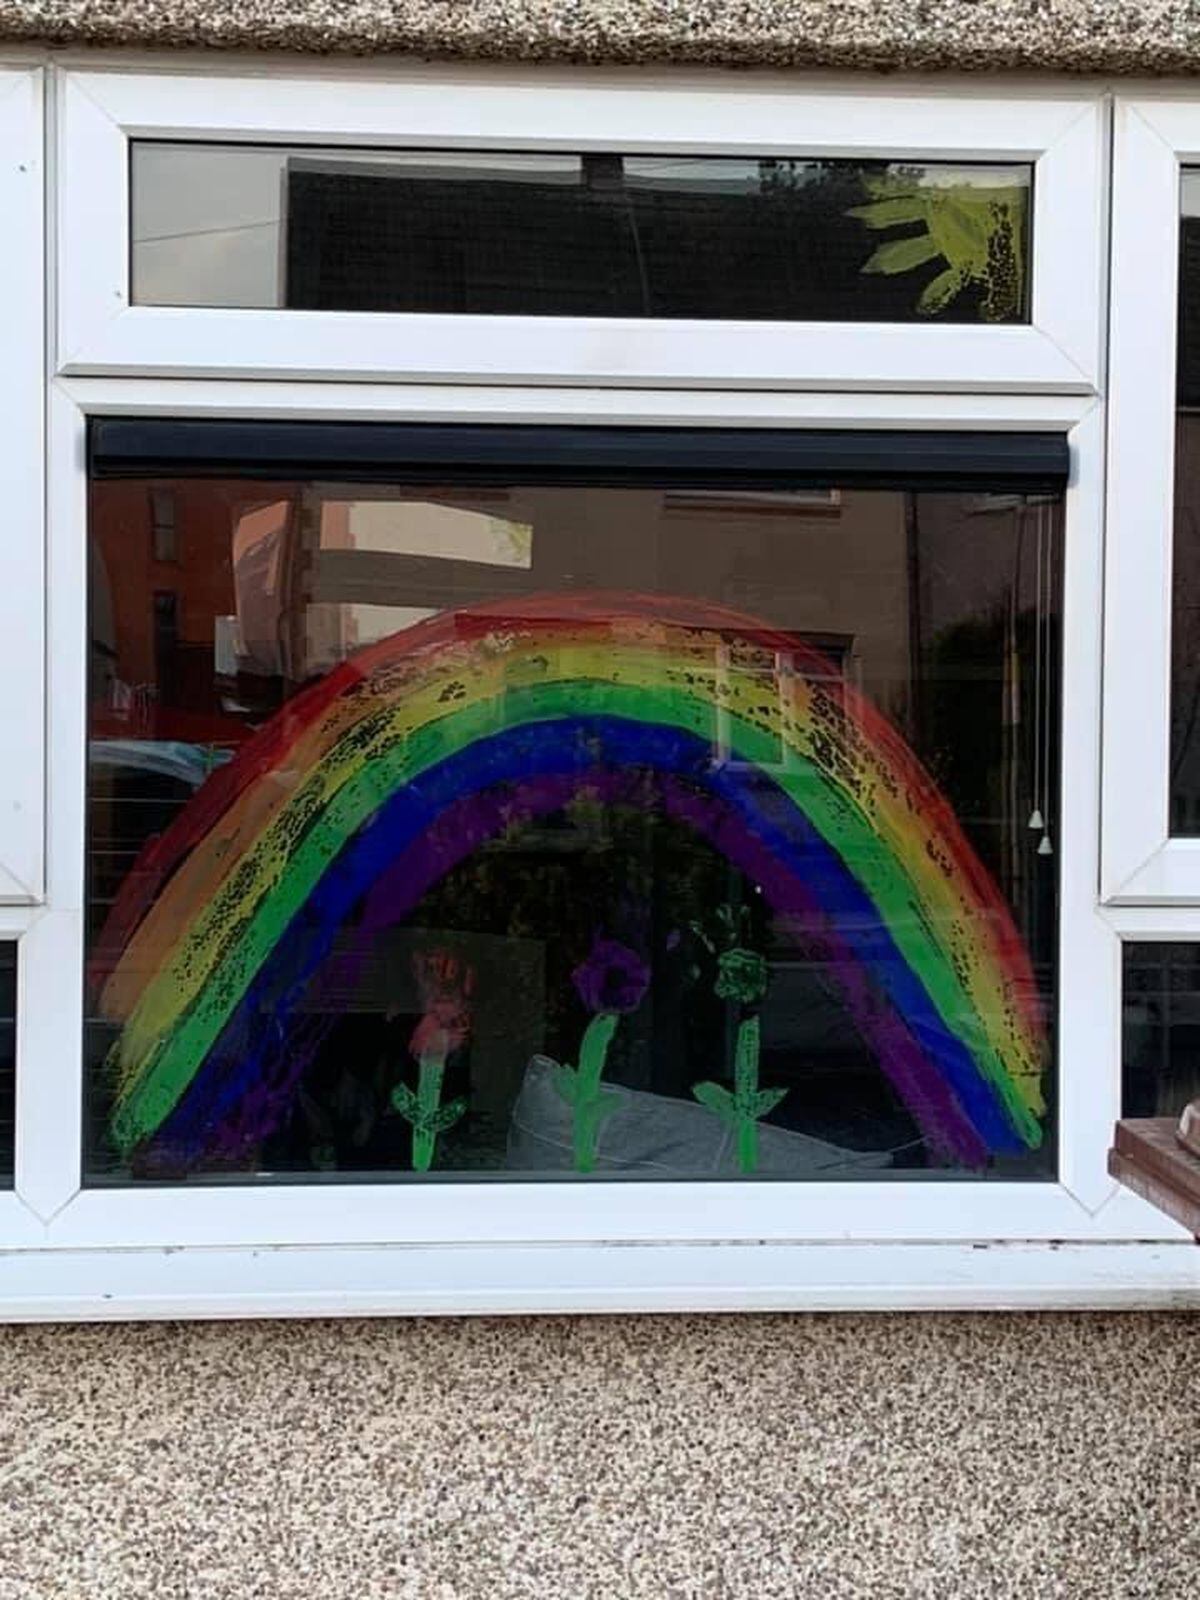 Faith Groom, 9, and Aj Groom, 5, from Walsall, with their rainbow creation